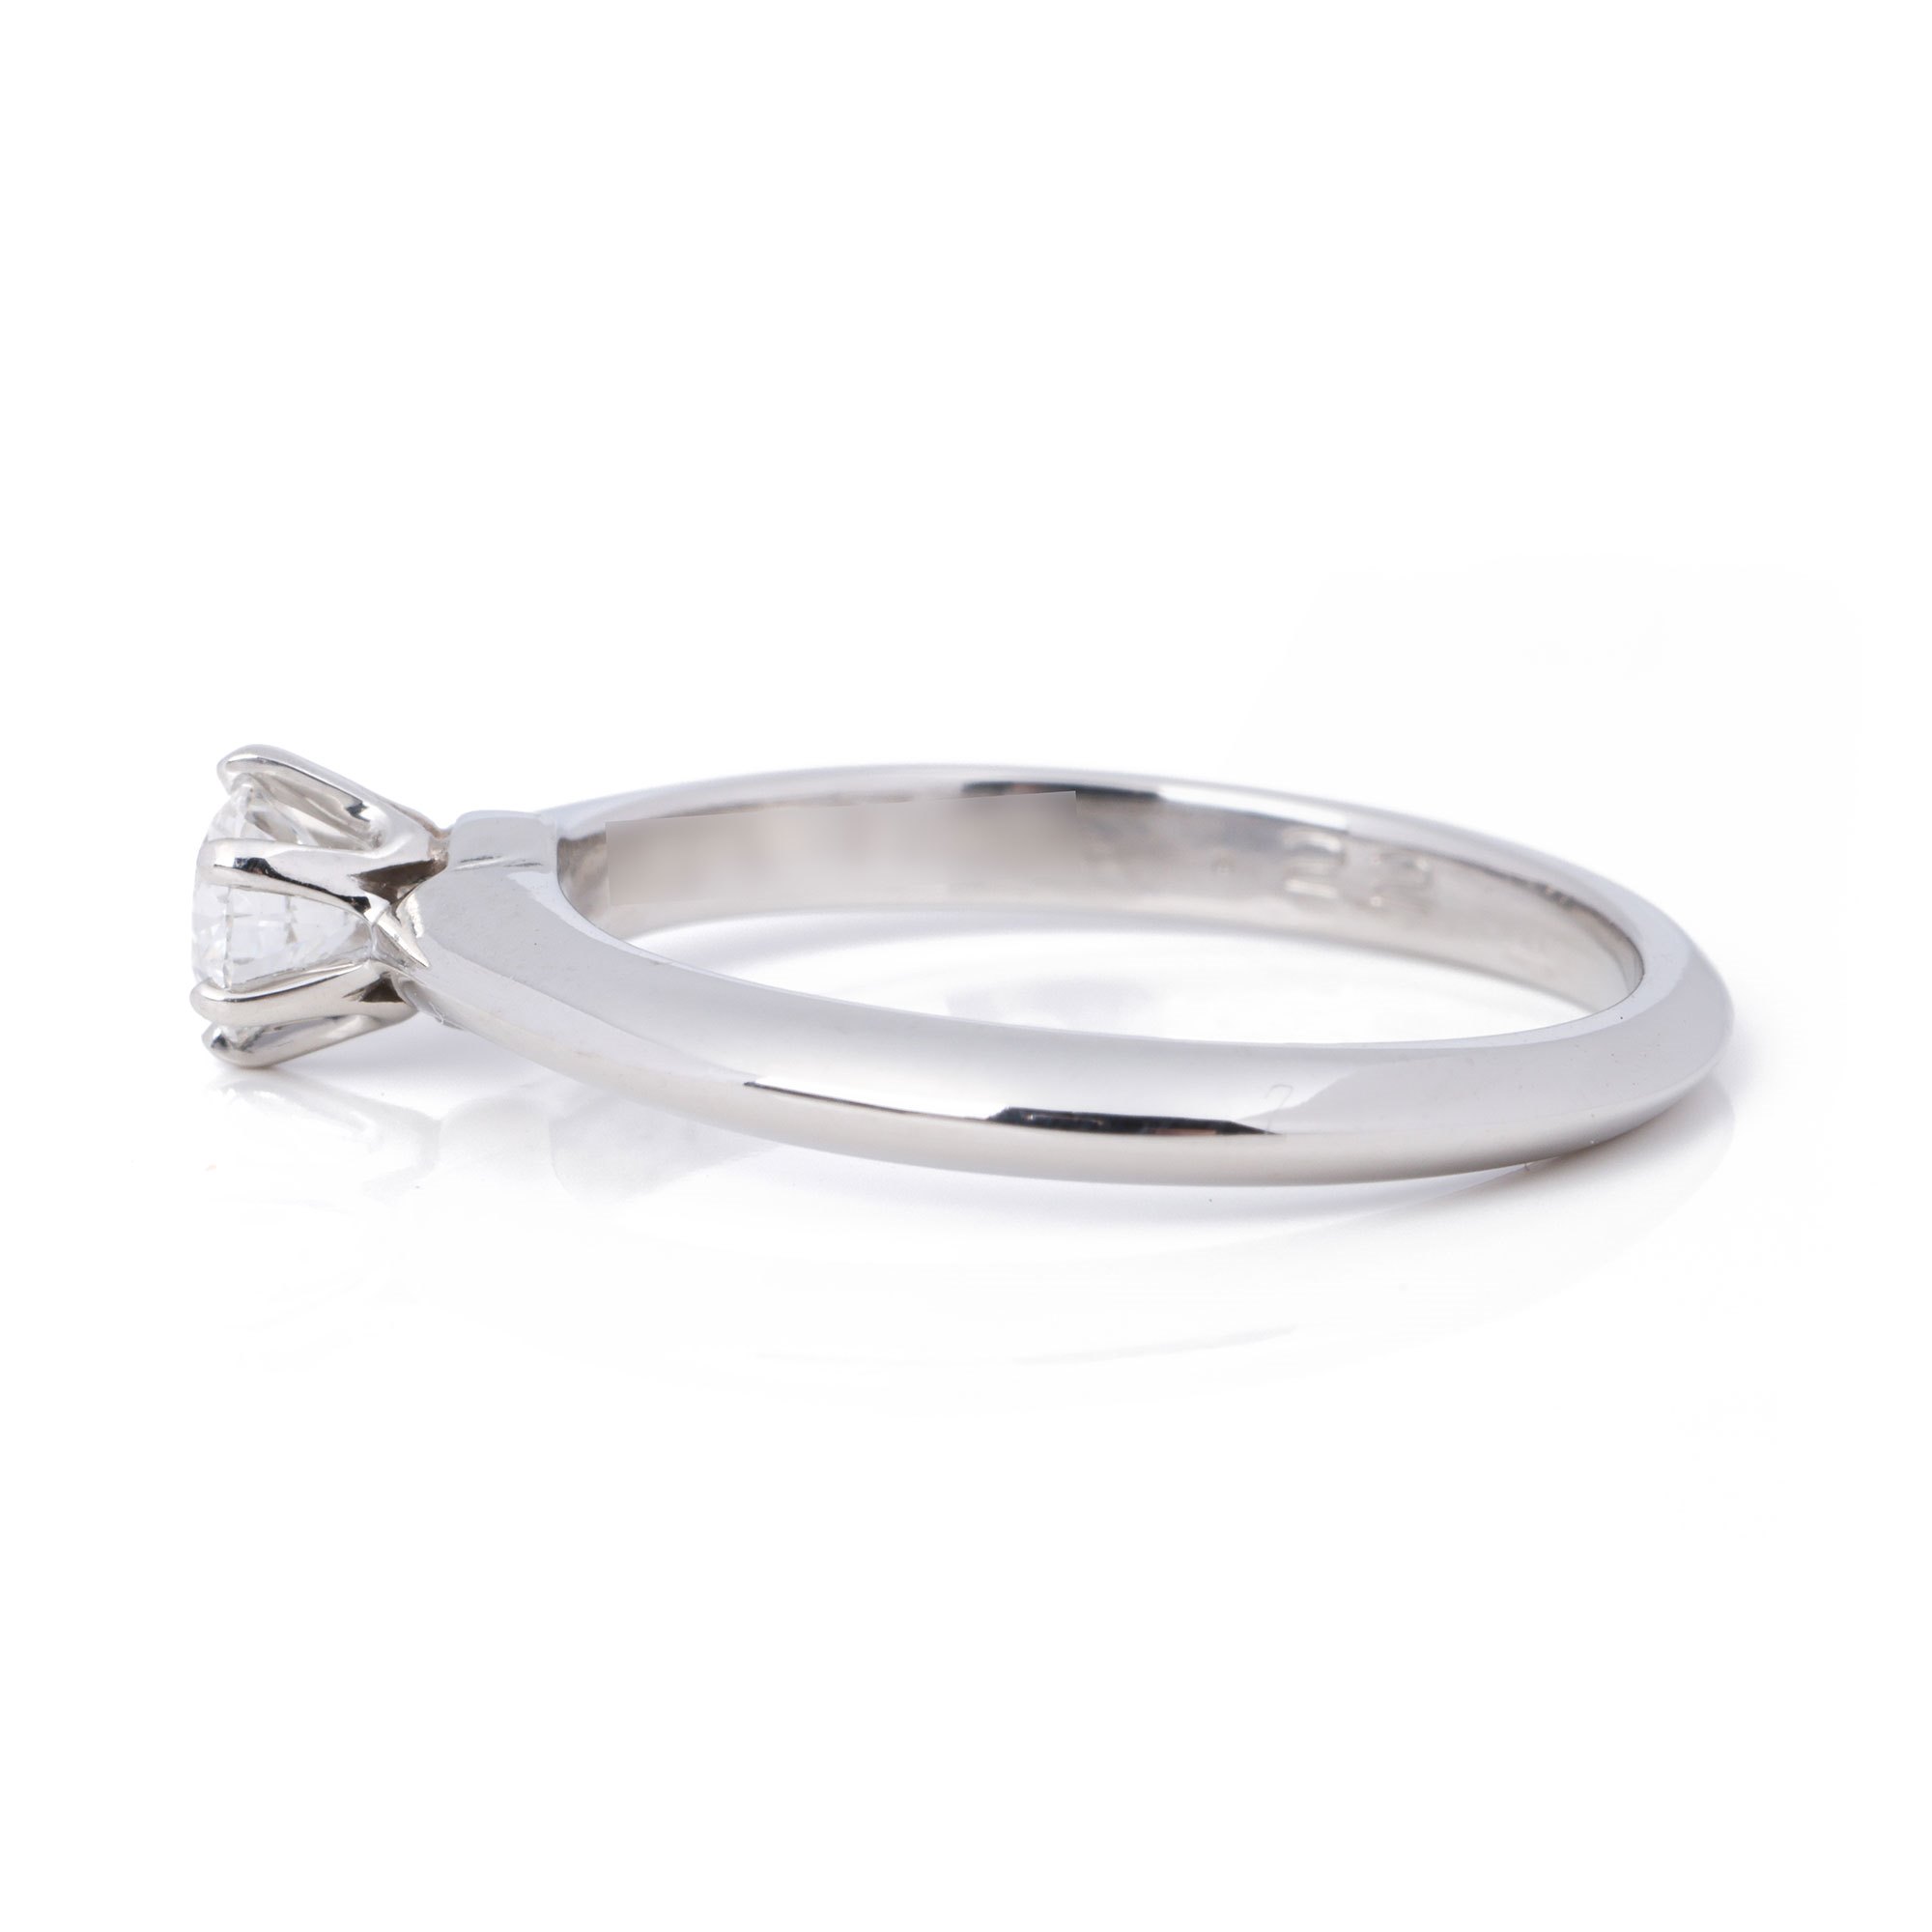 Tiffany & Co. Brilliant Cut 0.22ct Diamond Solitaire Ring